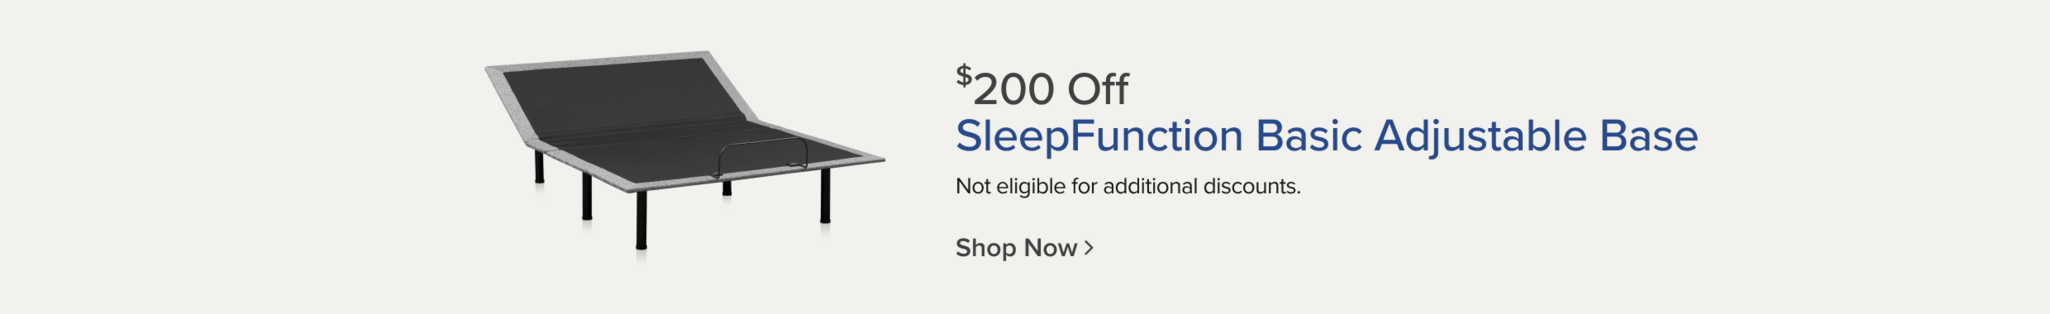 $200 Off SleepFunction Basic Adjustable Base - Shop Now